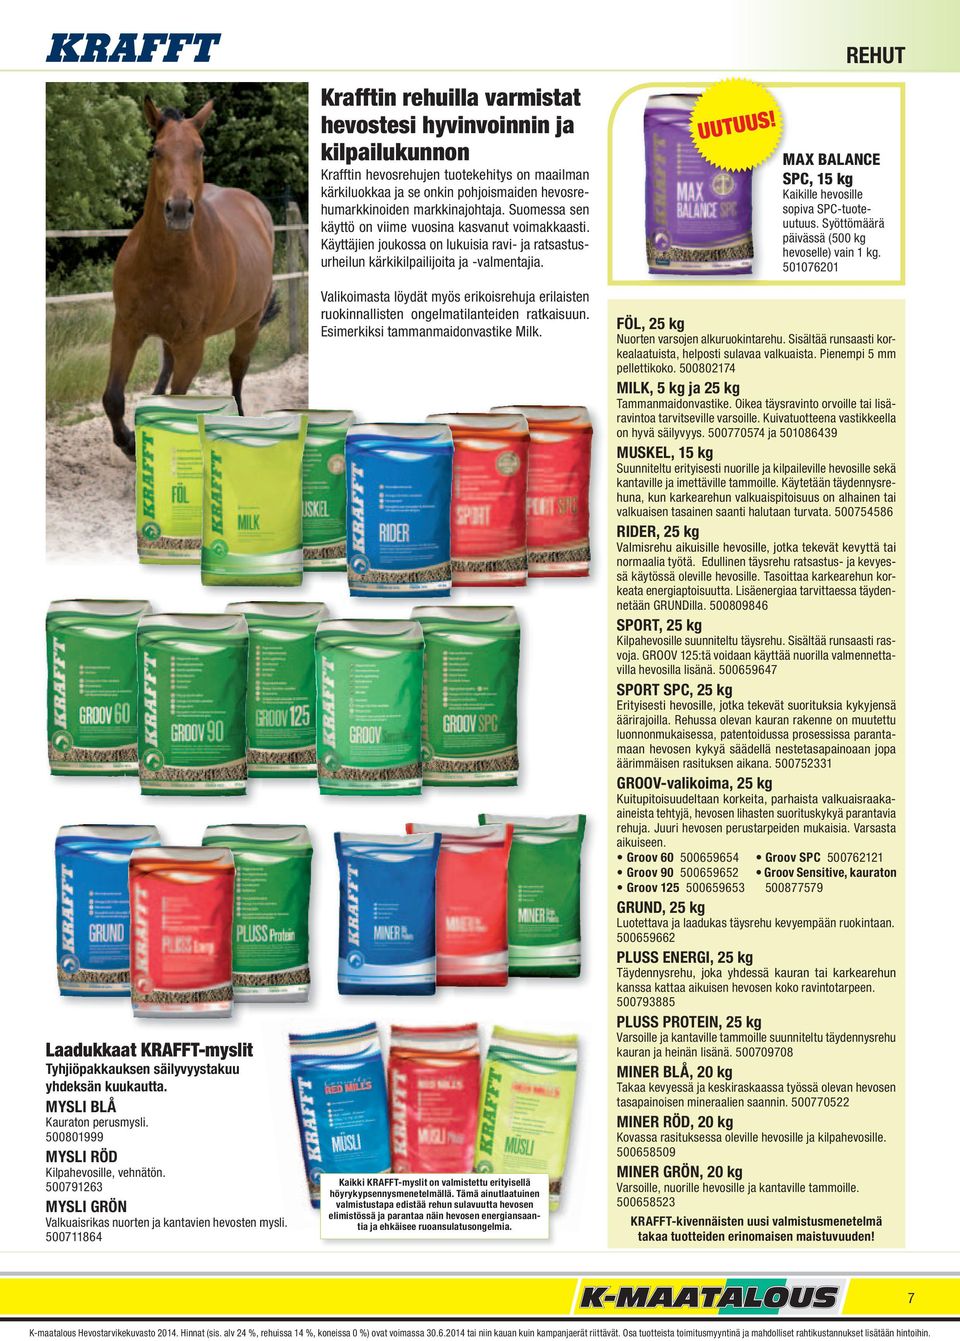 500711864 Krafftin rehuilla varmistat hevostesi hyvinvoinnin ja kilpailukunnon Krafftin hevosrehujen tuotekehitys on maailman kärkiluokkaa ja se onkin pohjoismaiden hevosrehumarkkinoiden